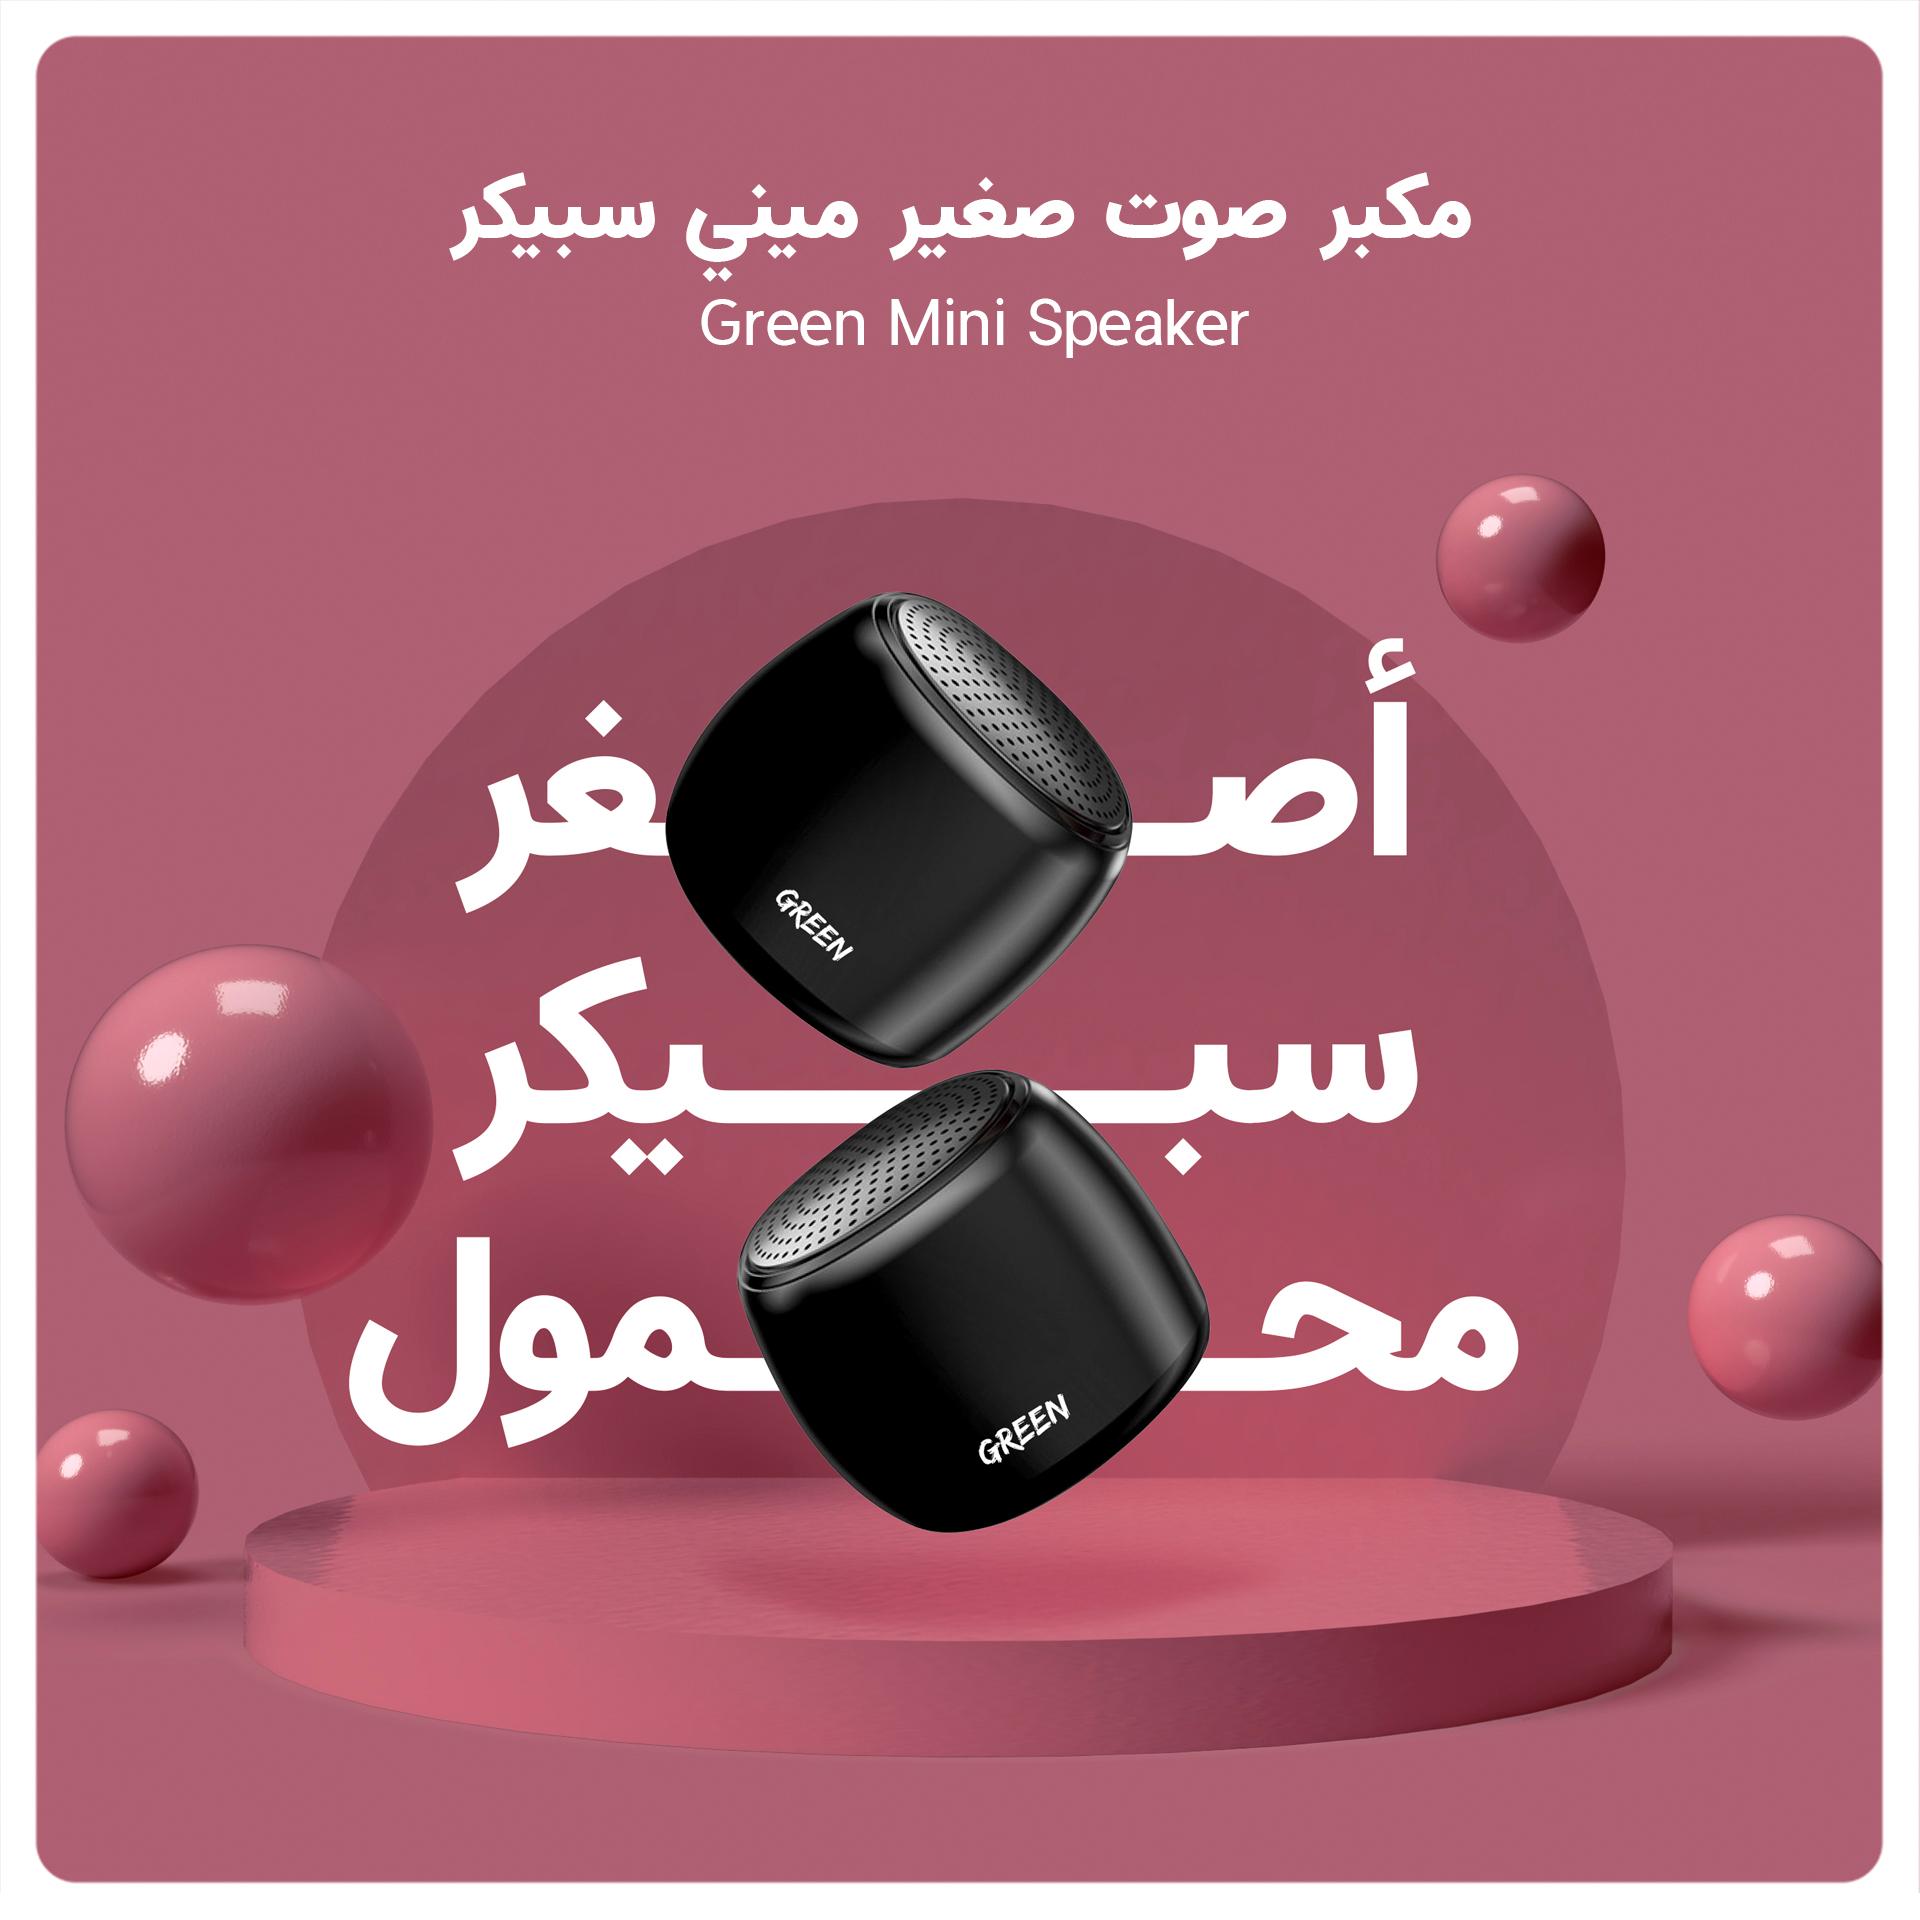 Green Lion Green Mini Speaker - Black